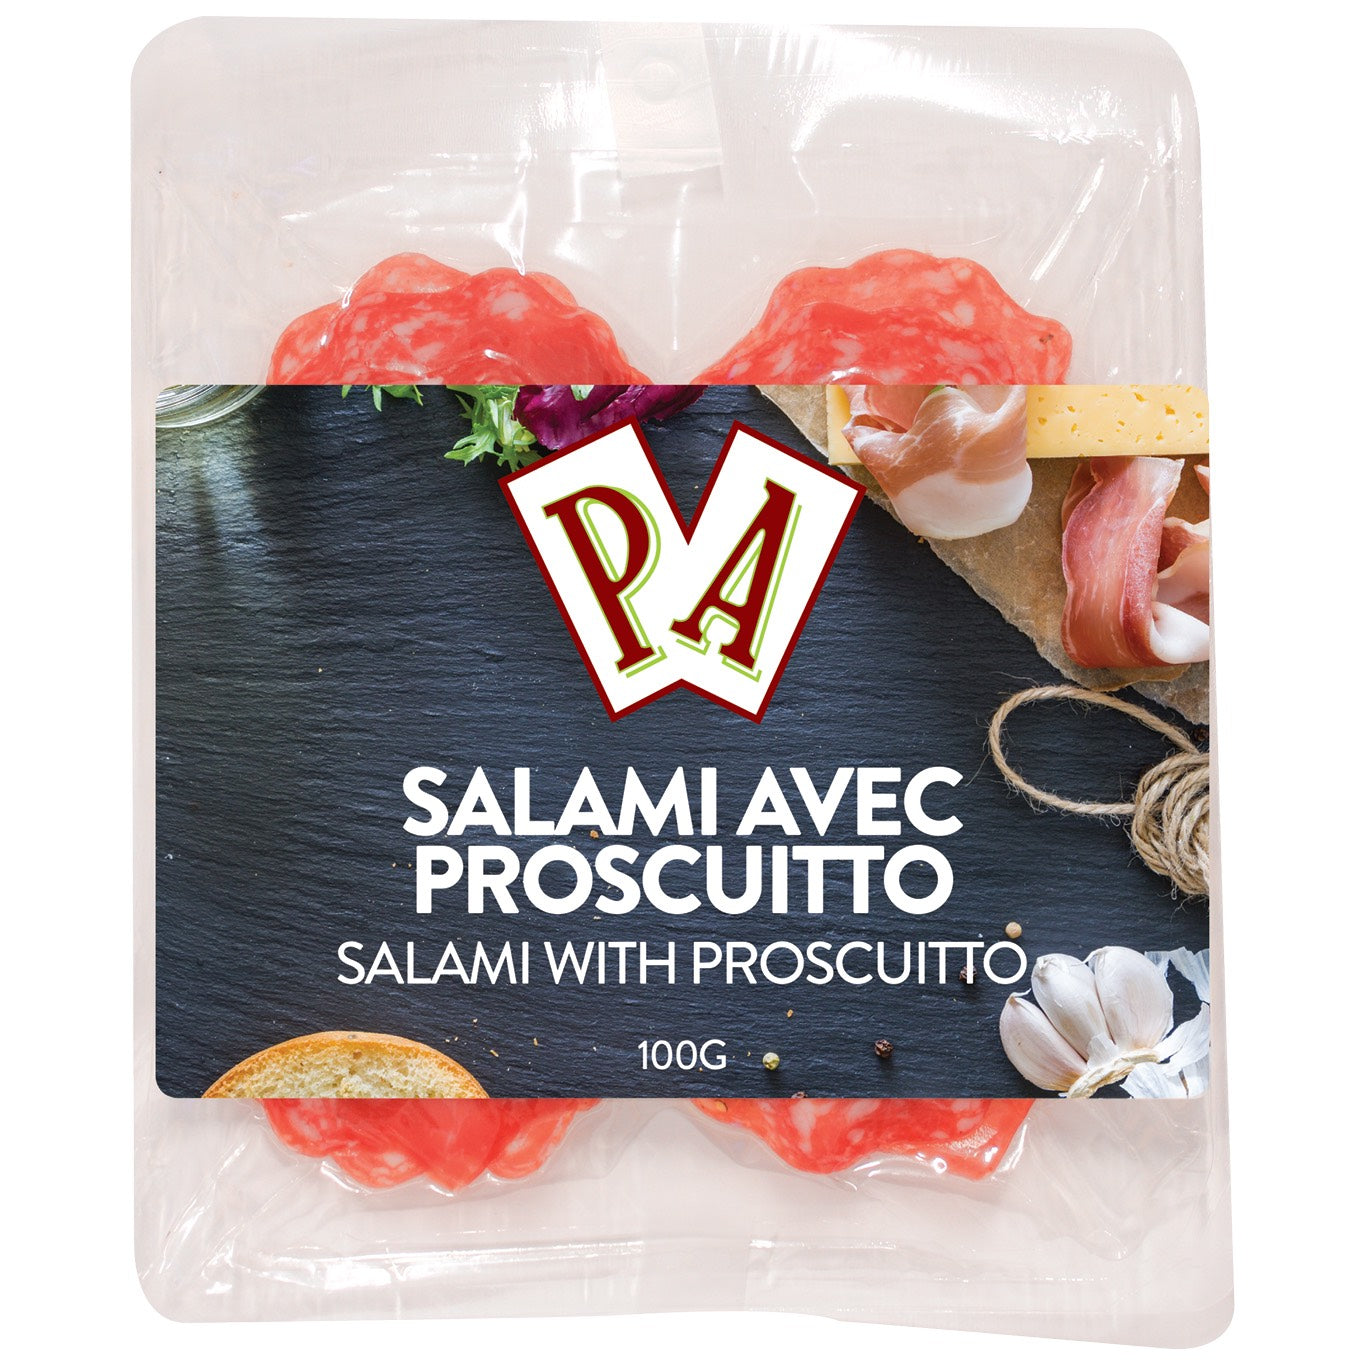 Salami with Prosciutto